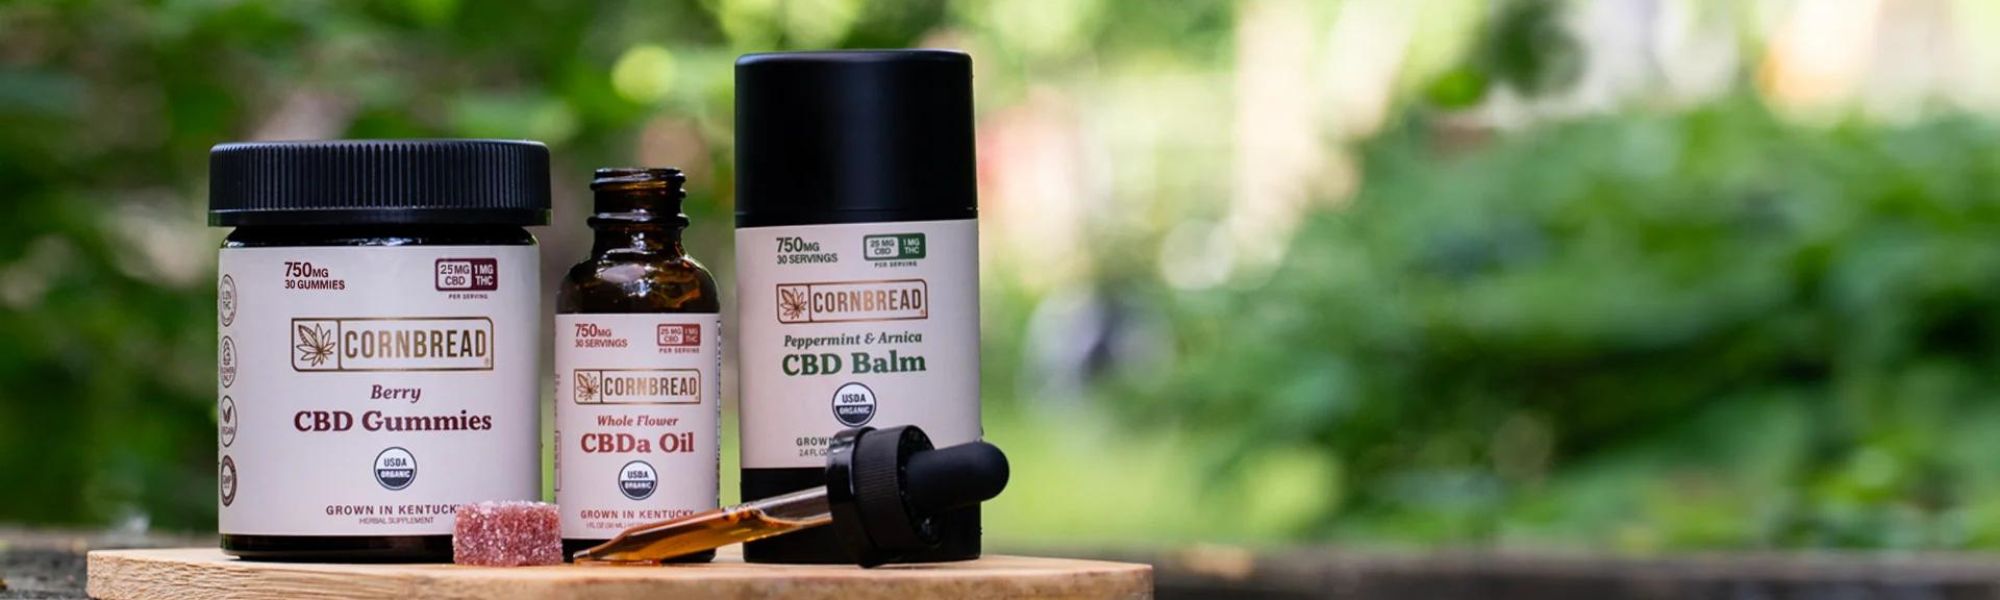 The Best CBD Products from Cornbread Hemp